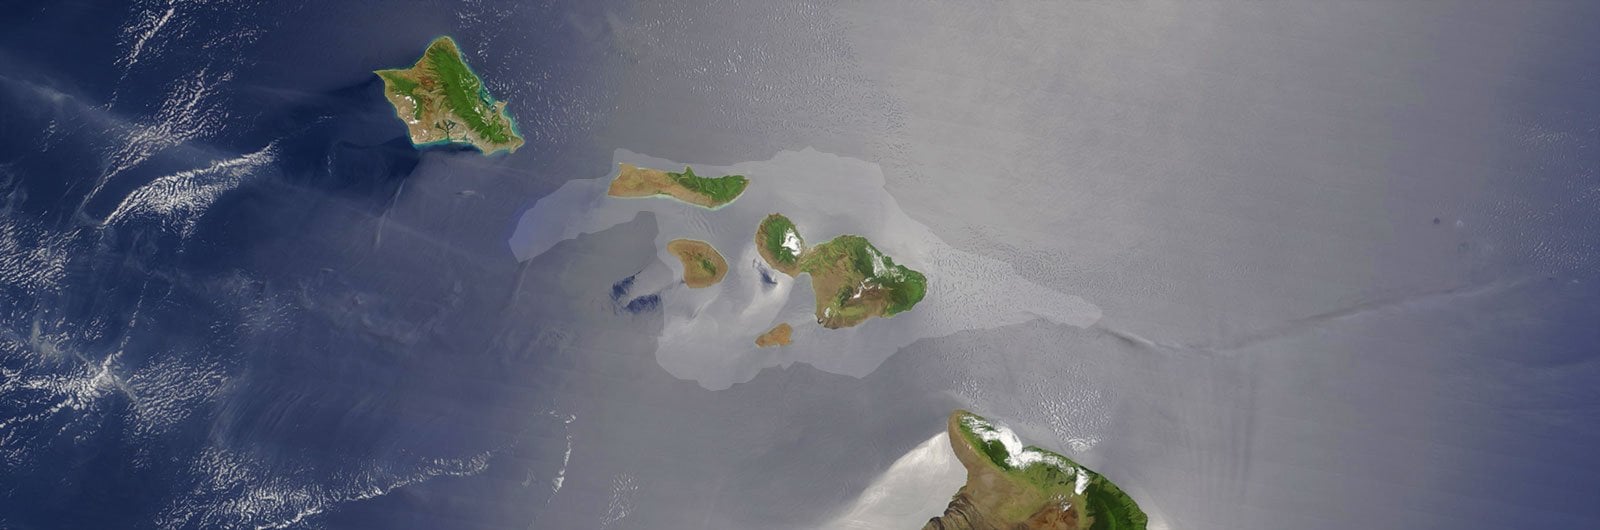 Maui Nui: Kahoolawe, Lanai, Molokai, and Maui